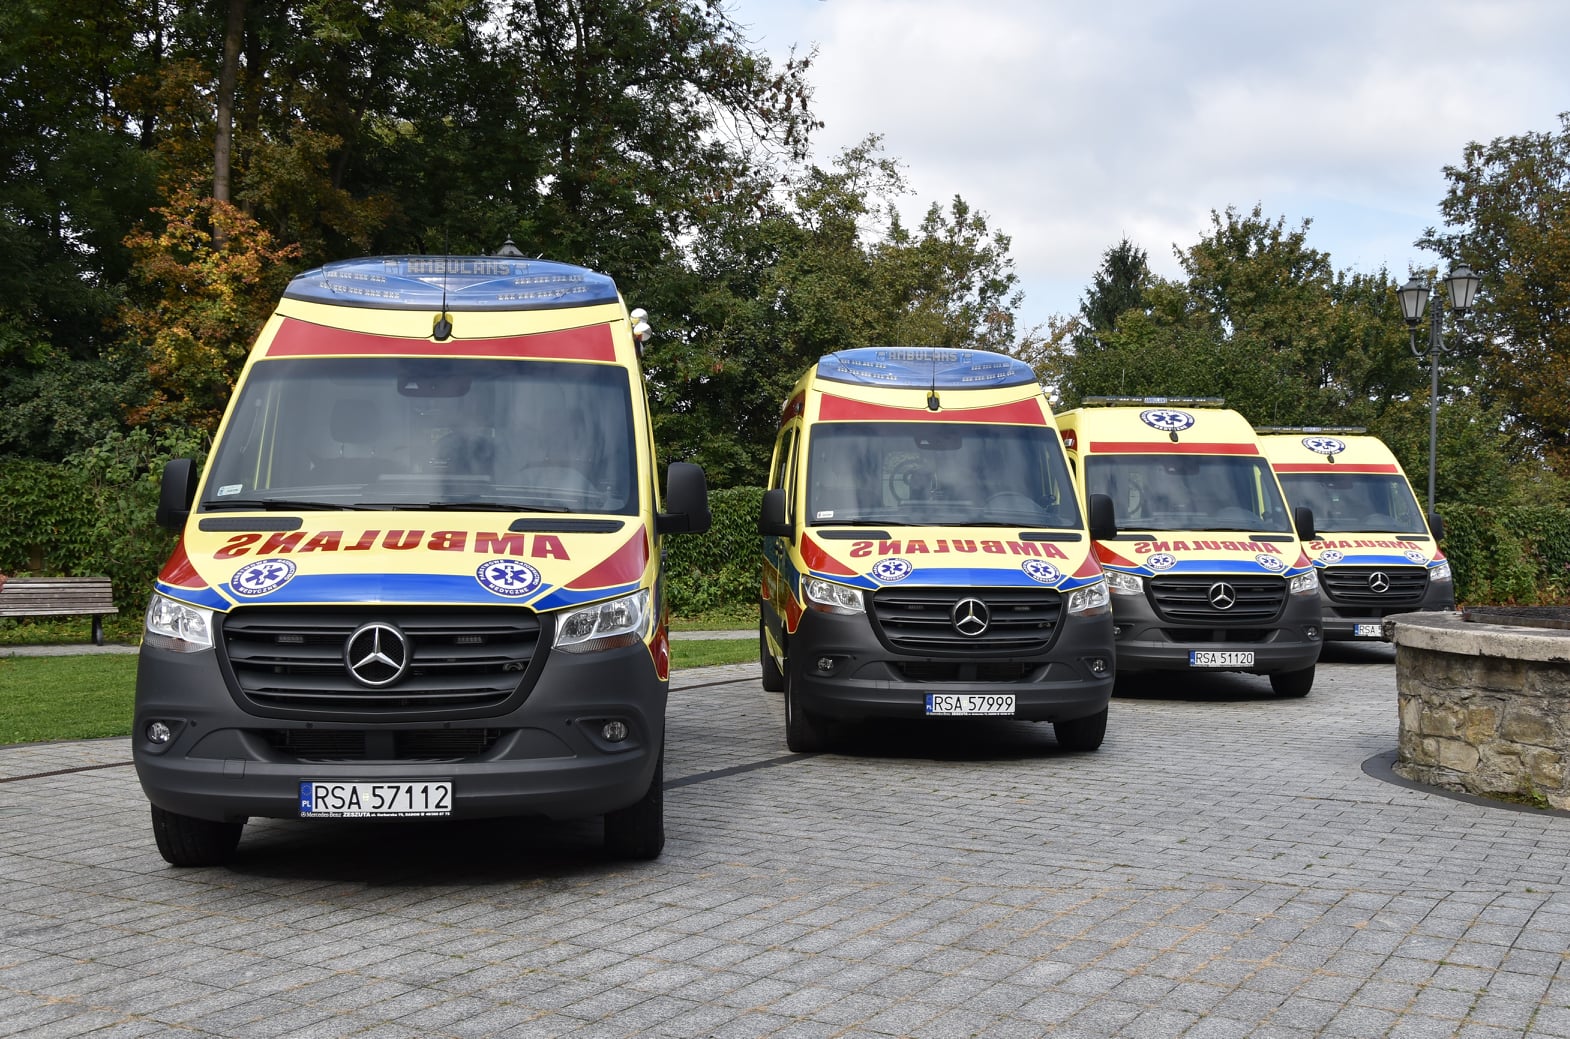 SANOK: Nowe ambulanse dla Bieszczadzkiego Pogotowia Ratunkowego [ZDJĘCIA] - Zdjęcie główne